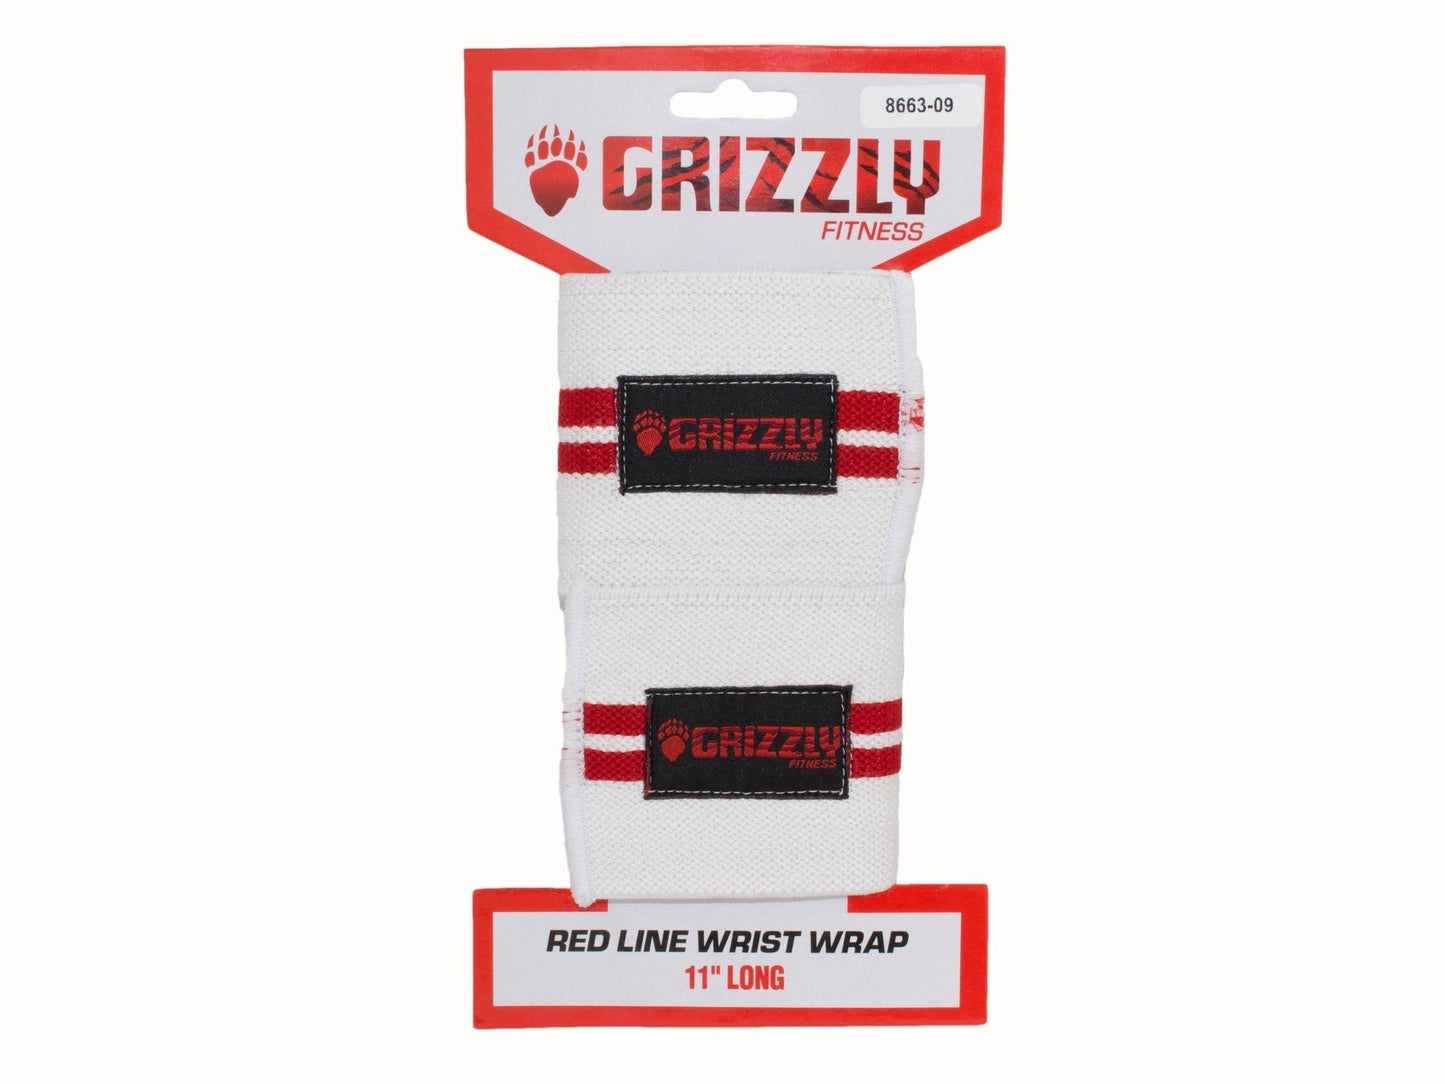 Grizzly Fitness Redline Wrist Wrap (11" Long)